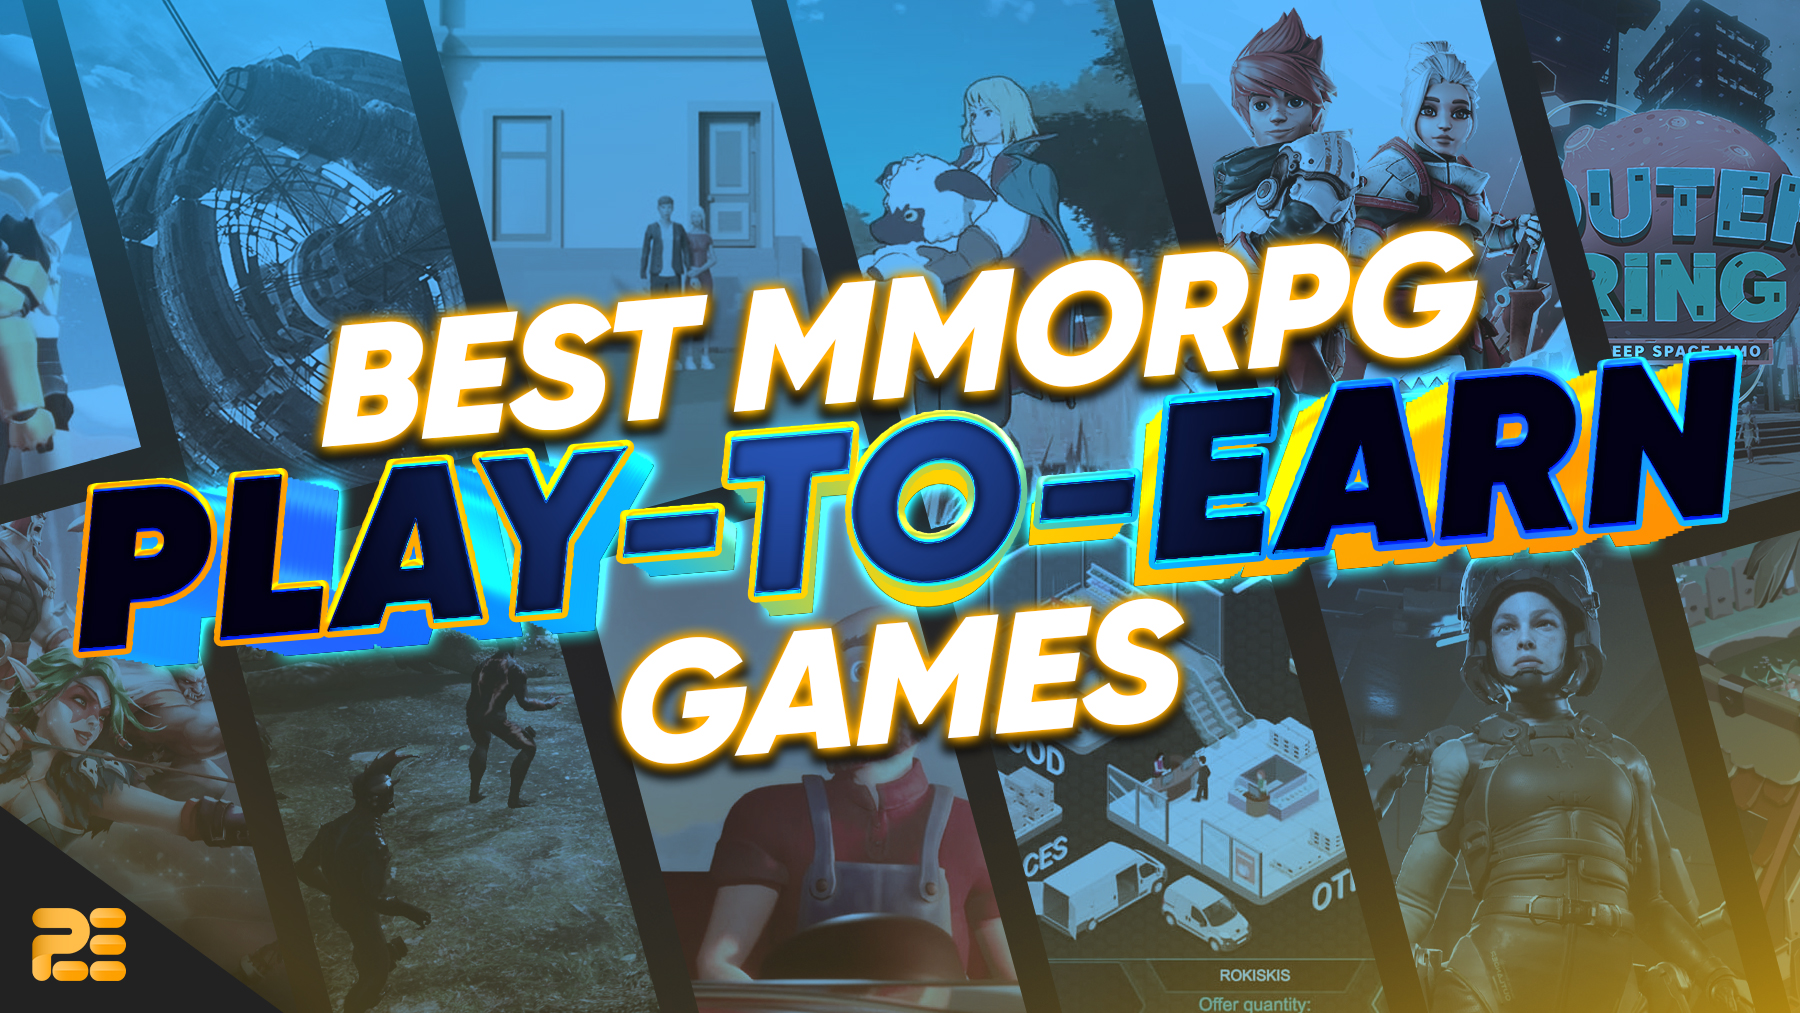 Best PlaytoEarn MMORPG Games